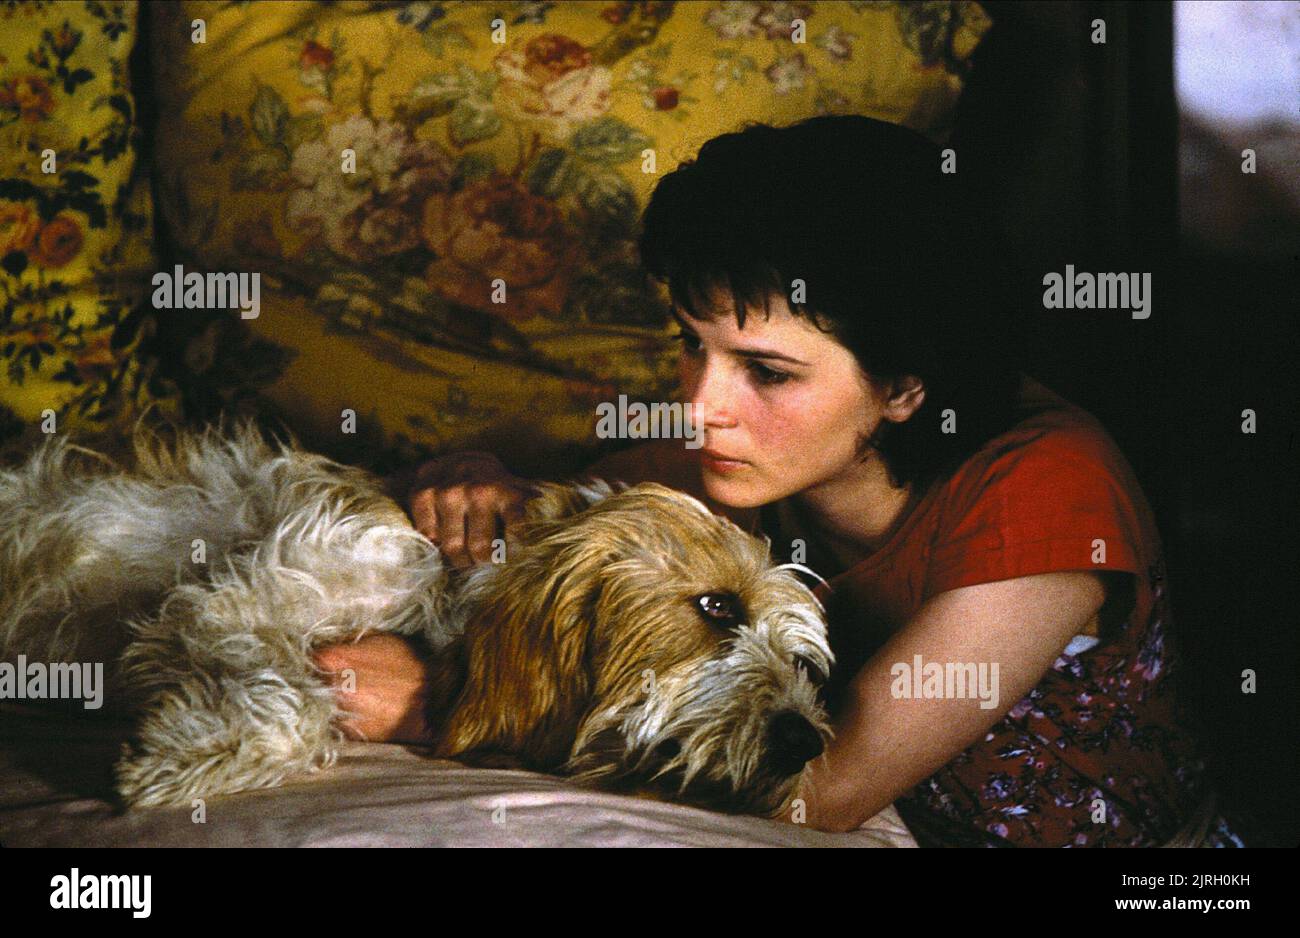 JULIETTE BINOCHE, UNBEARABLE LIGHTNESS OF BEING, 1988 Stock Photo